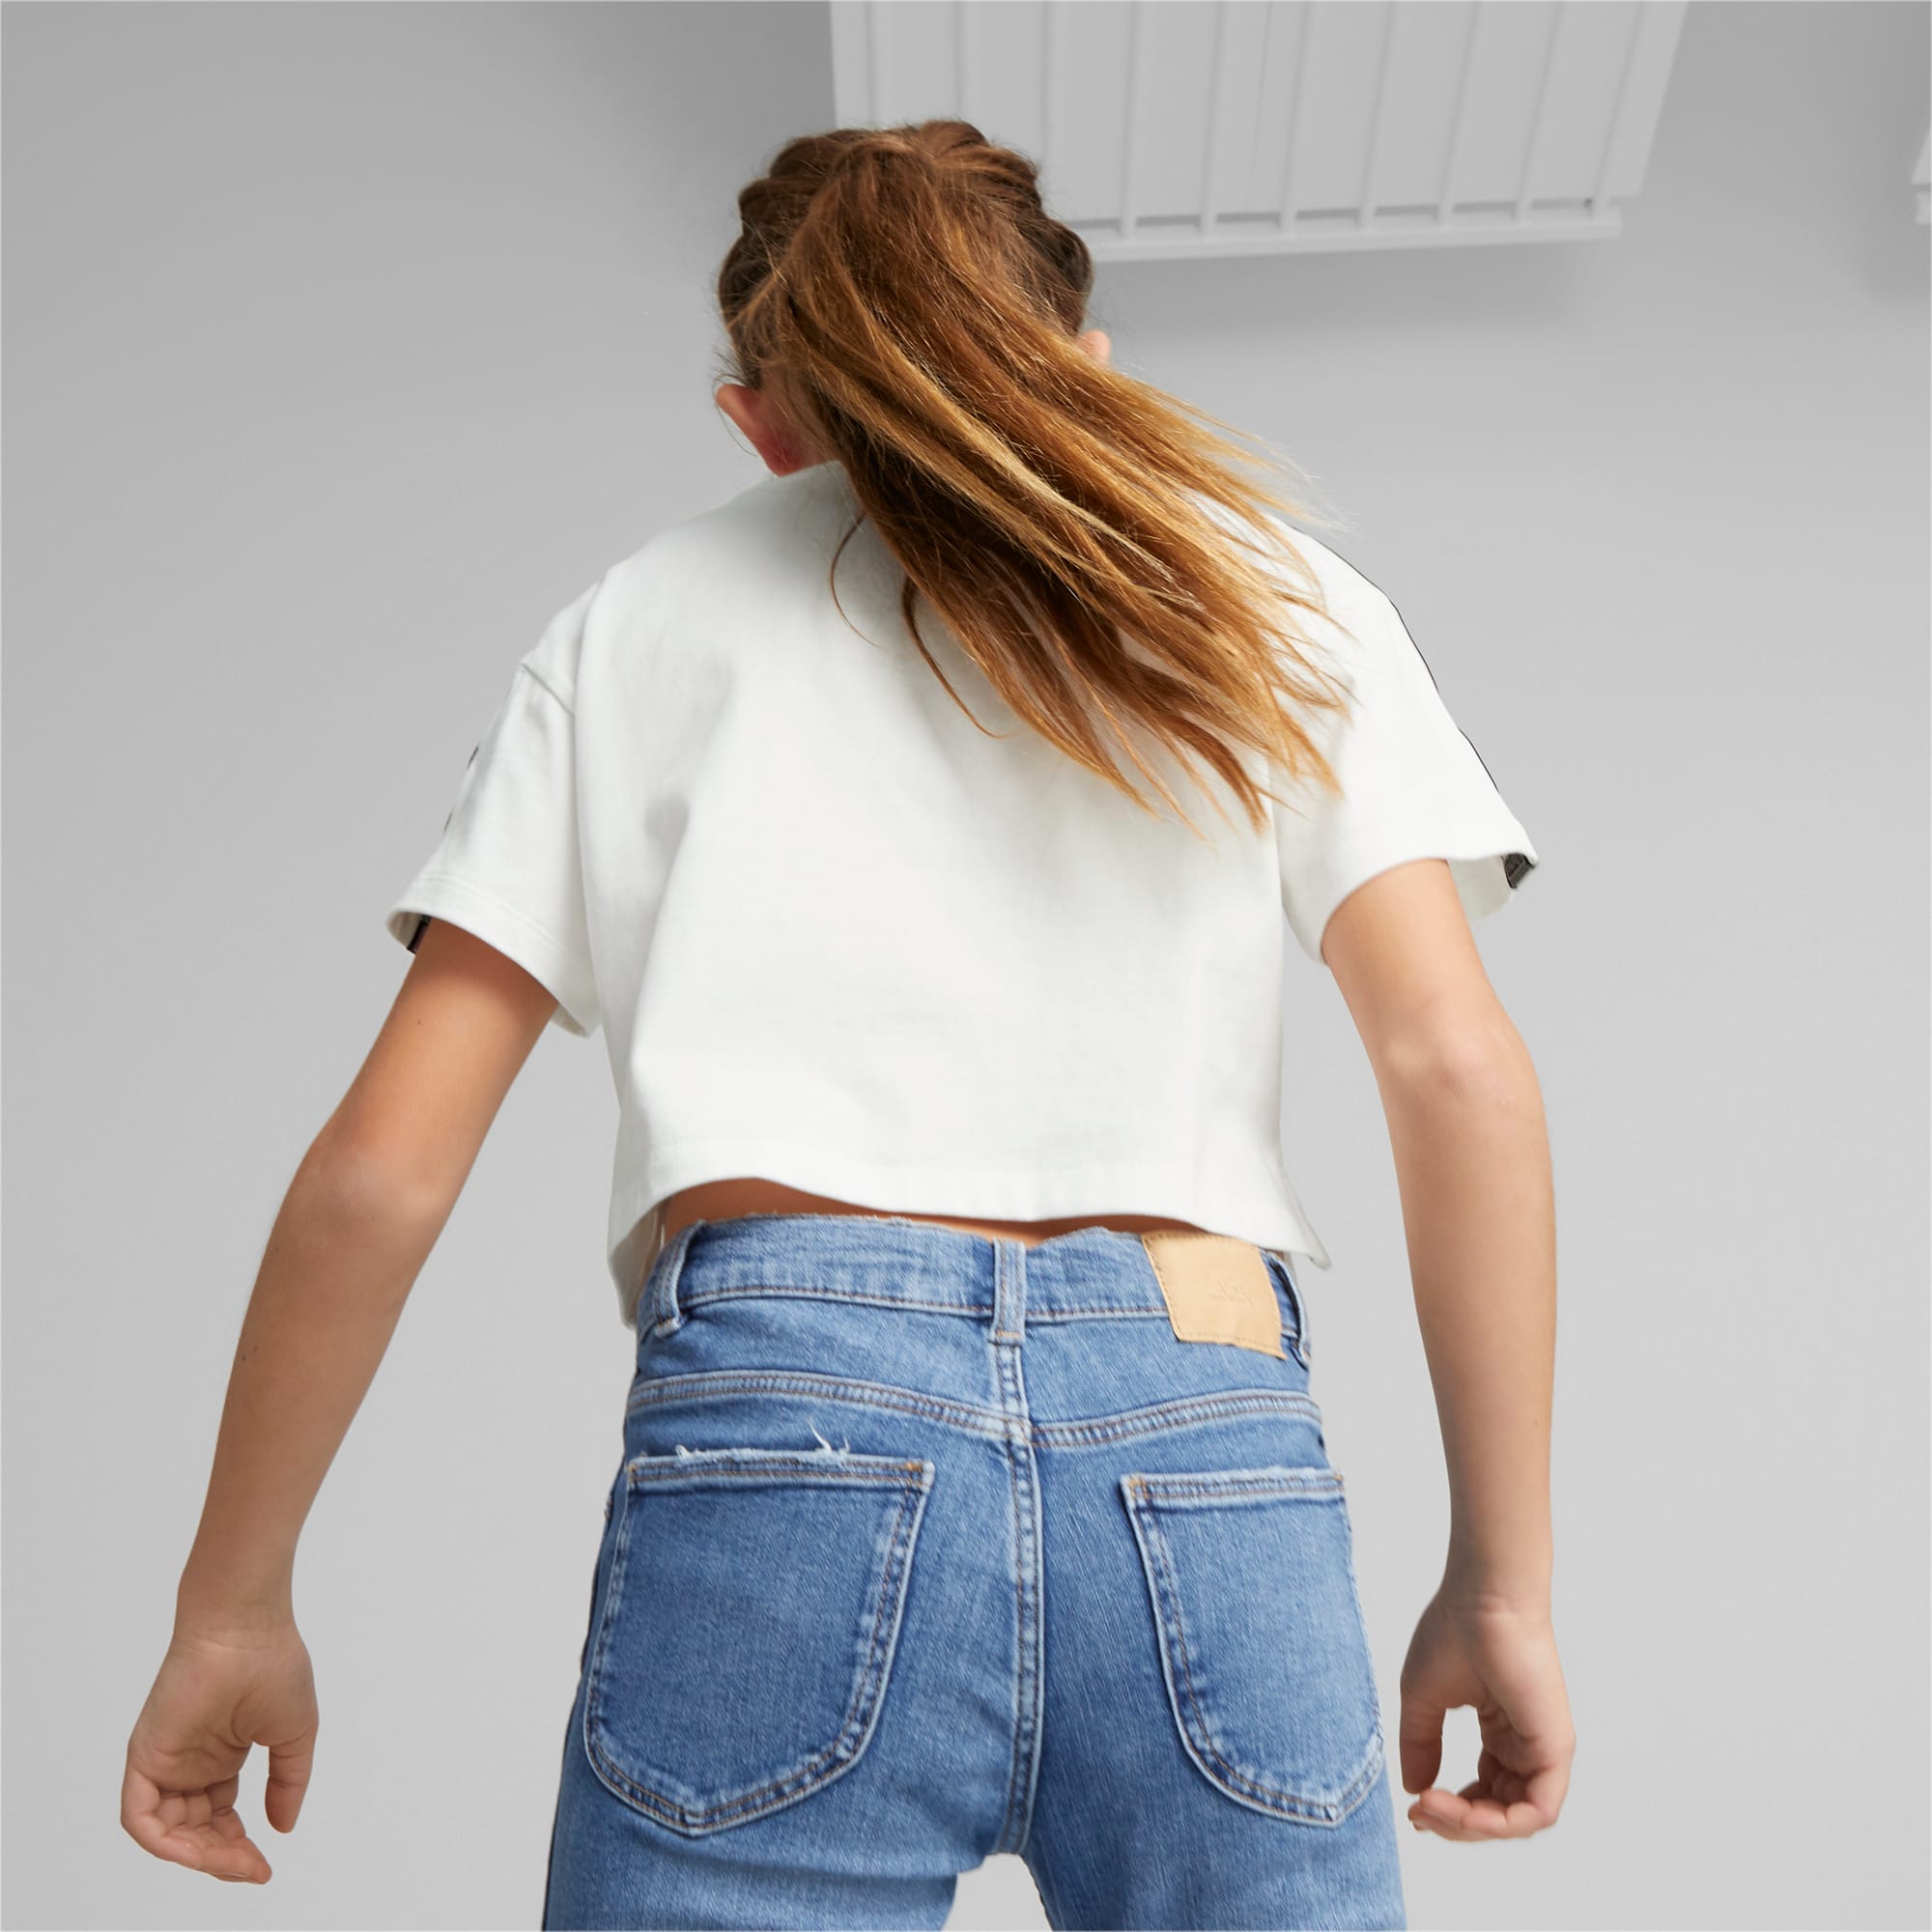 PUMA Ruleb T-Shirt Youth, White, Size 128, Clothing